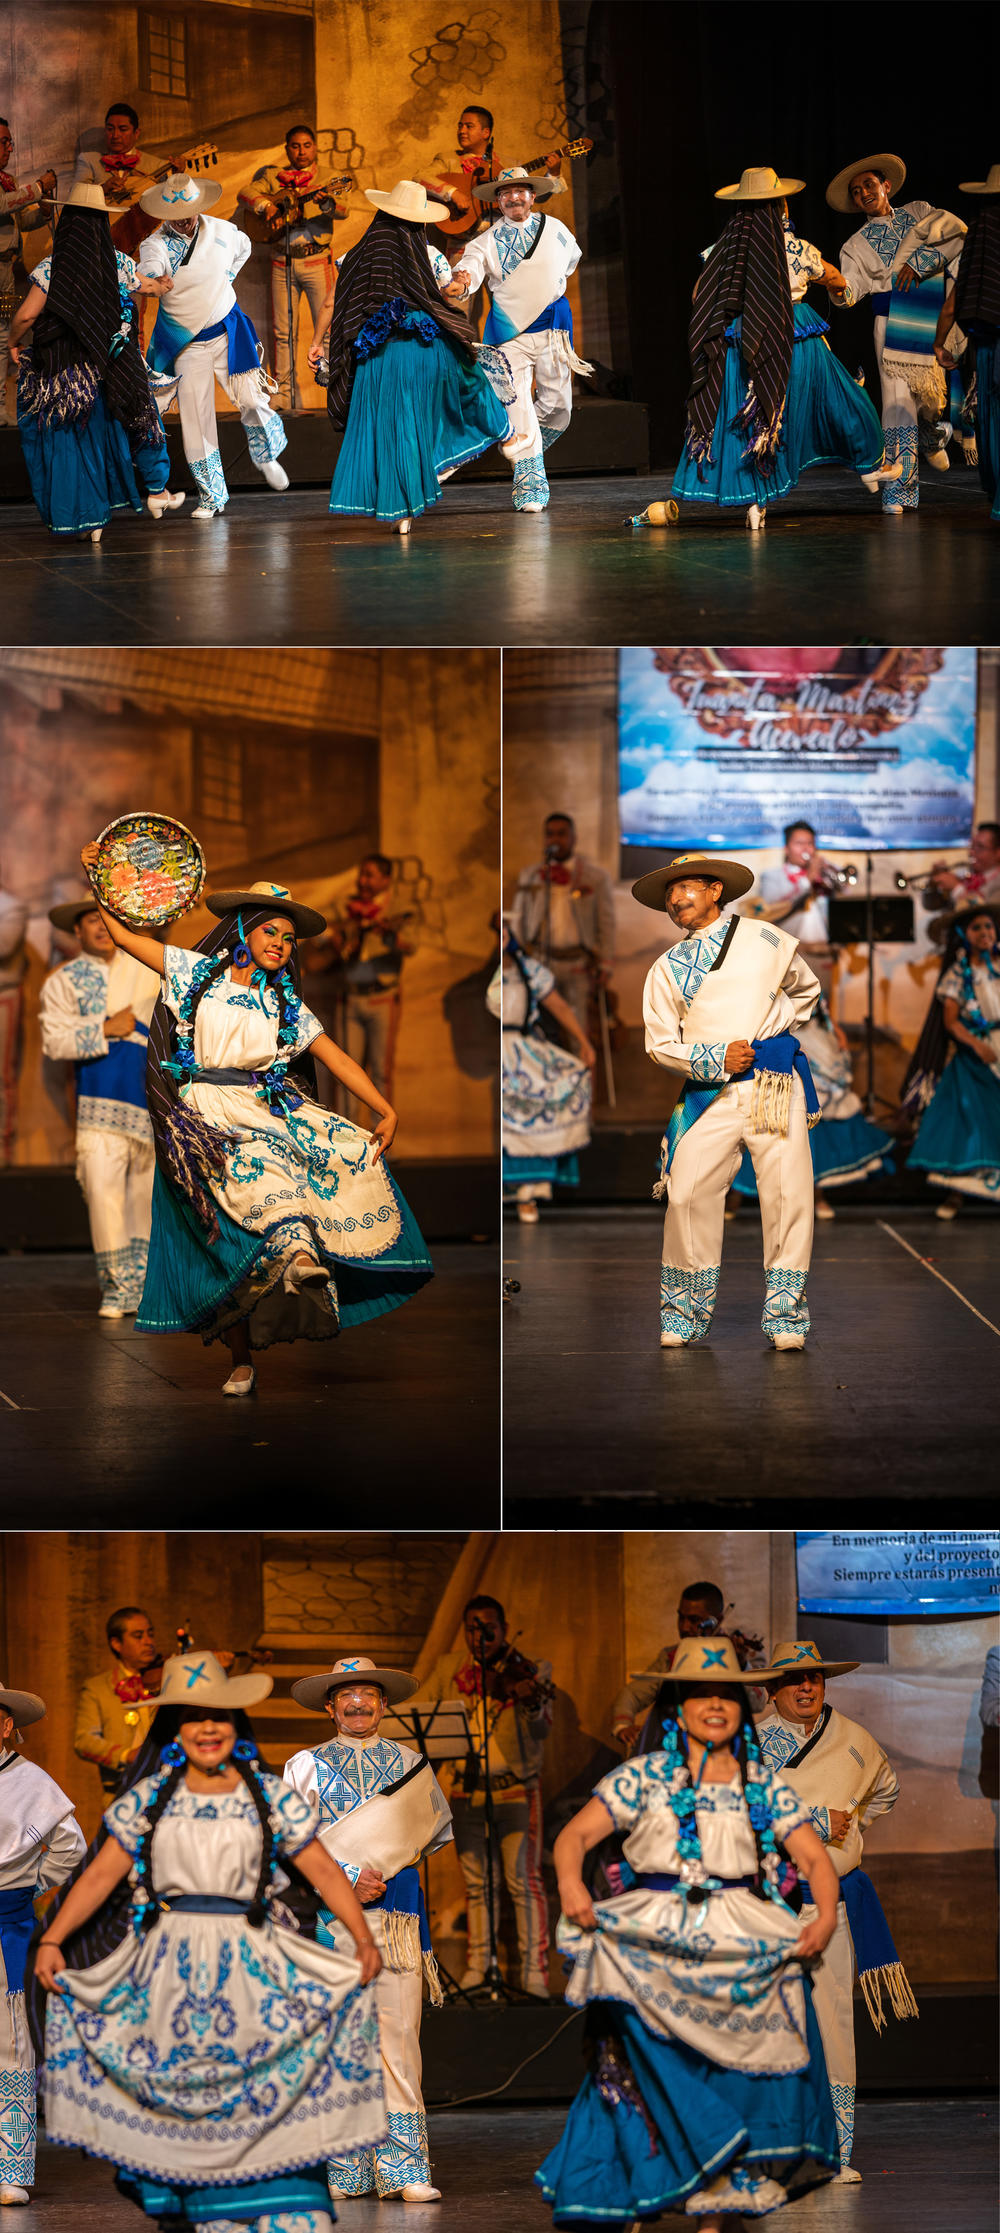 Tío Sergio interpreta un baile regional de Michoacán con los miembros de su grupo en el Teatro Ferrocarrilero Gudelio Morales de Ciudad de México en julio.